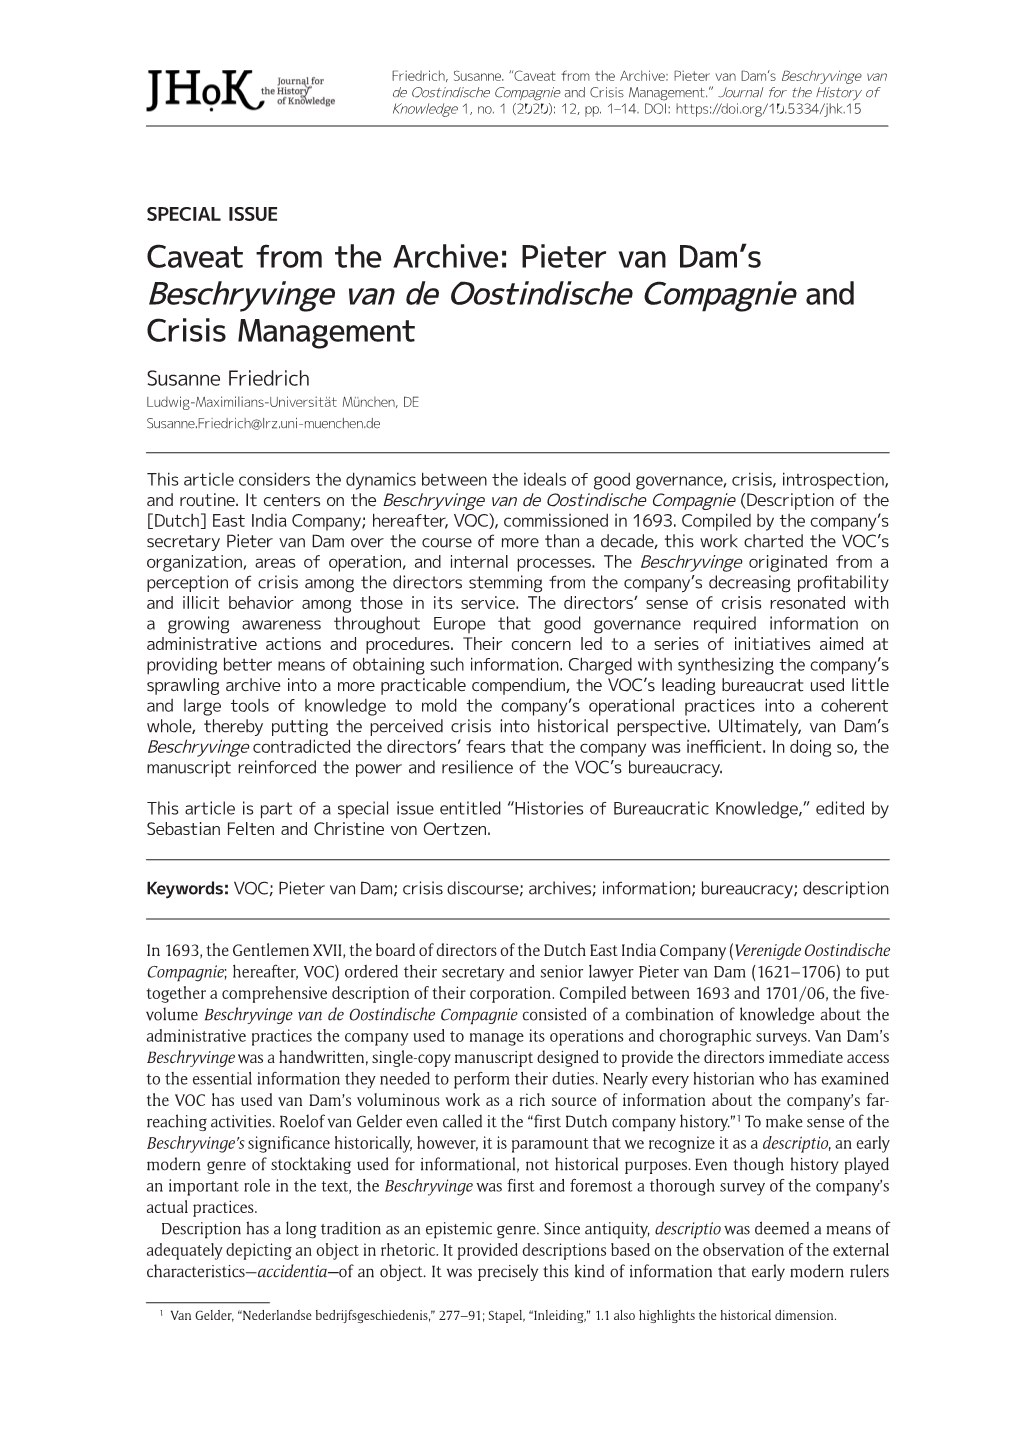 Caveat from the Archive: Pieter Van Dam's Beschryvinge Van De Oostindische Compagnie and Crisis Management